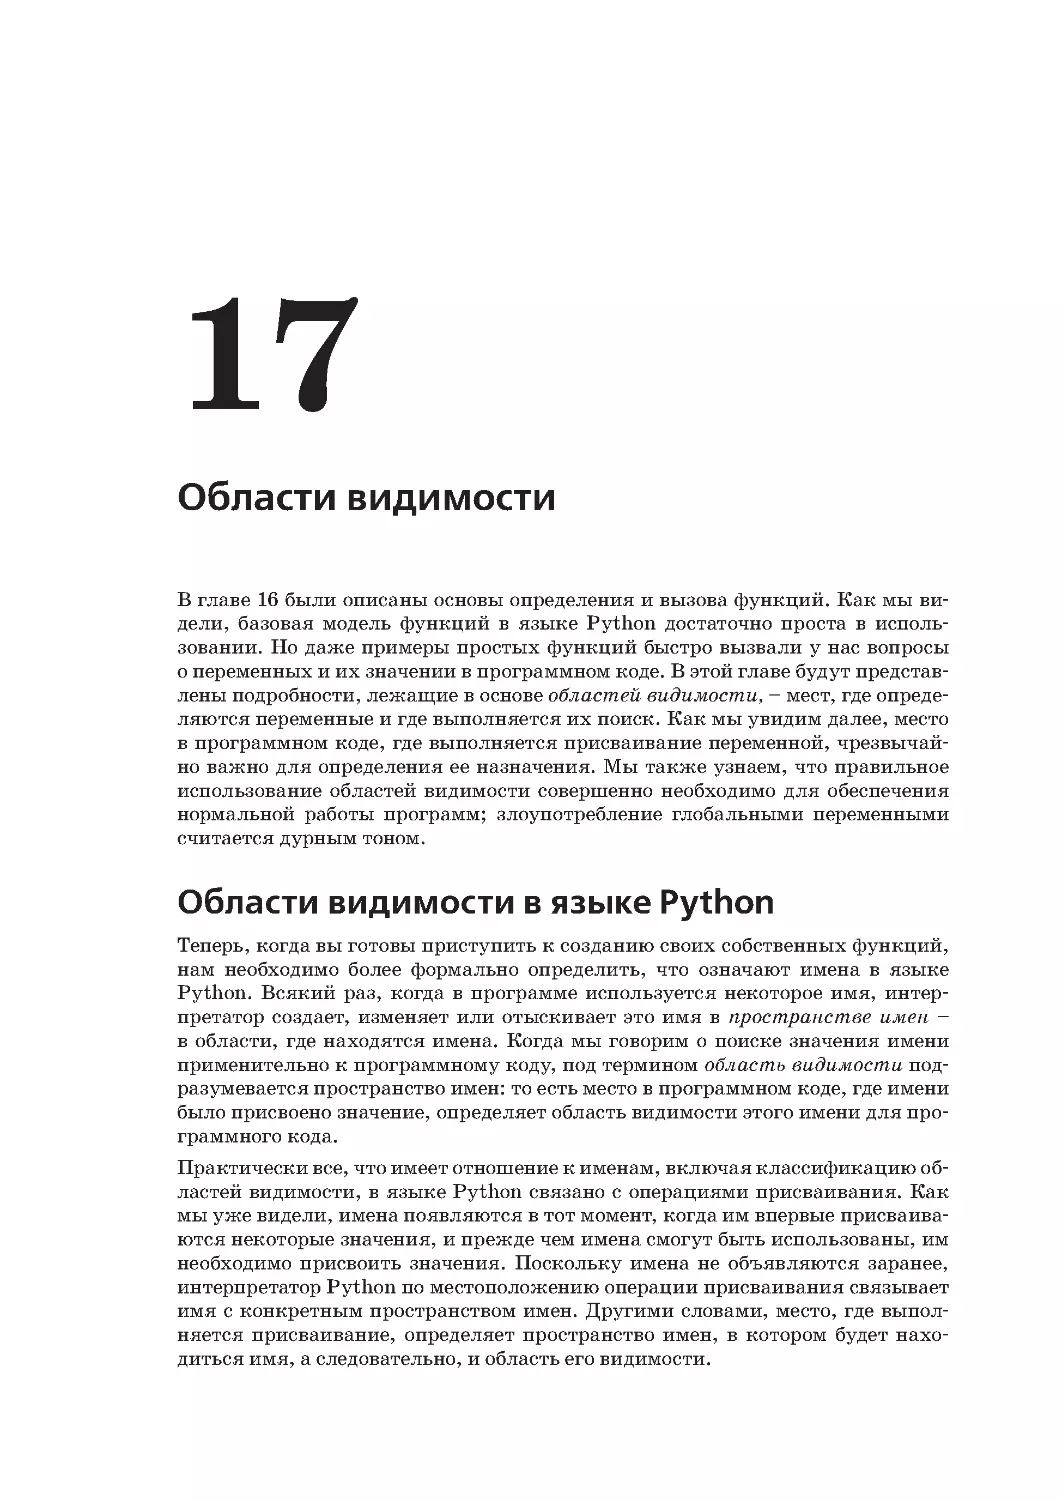 Глава 17.
Области видимости в языке Python